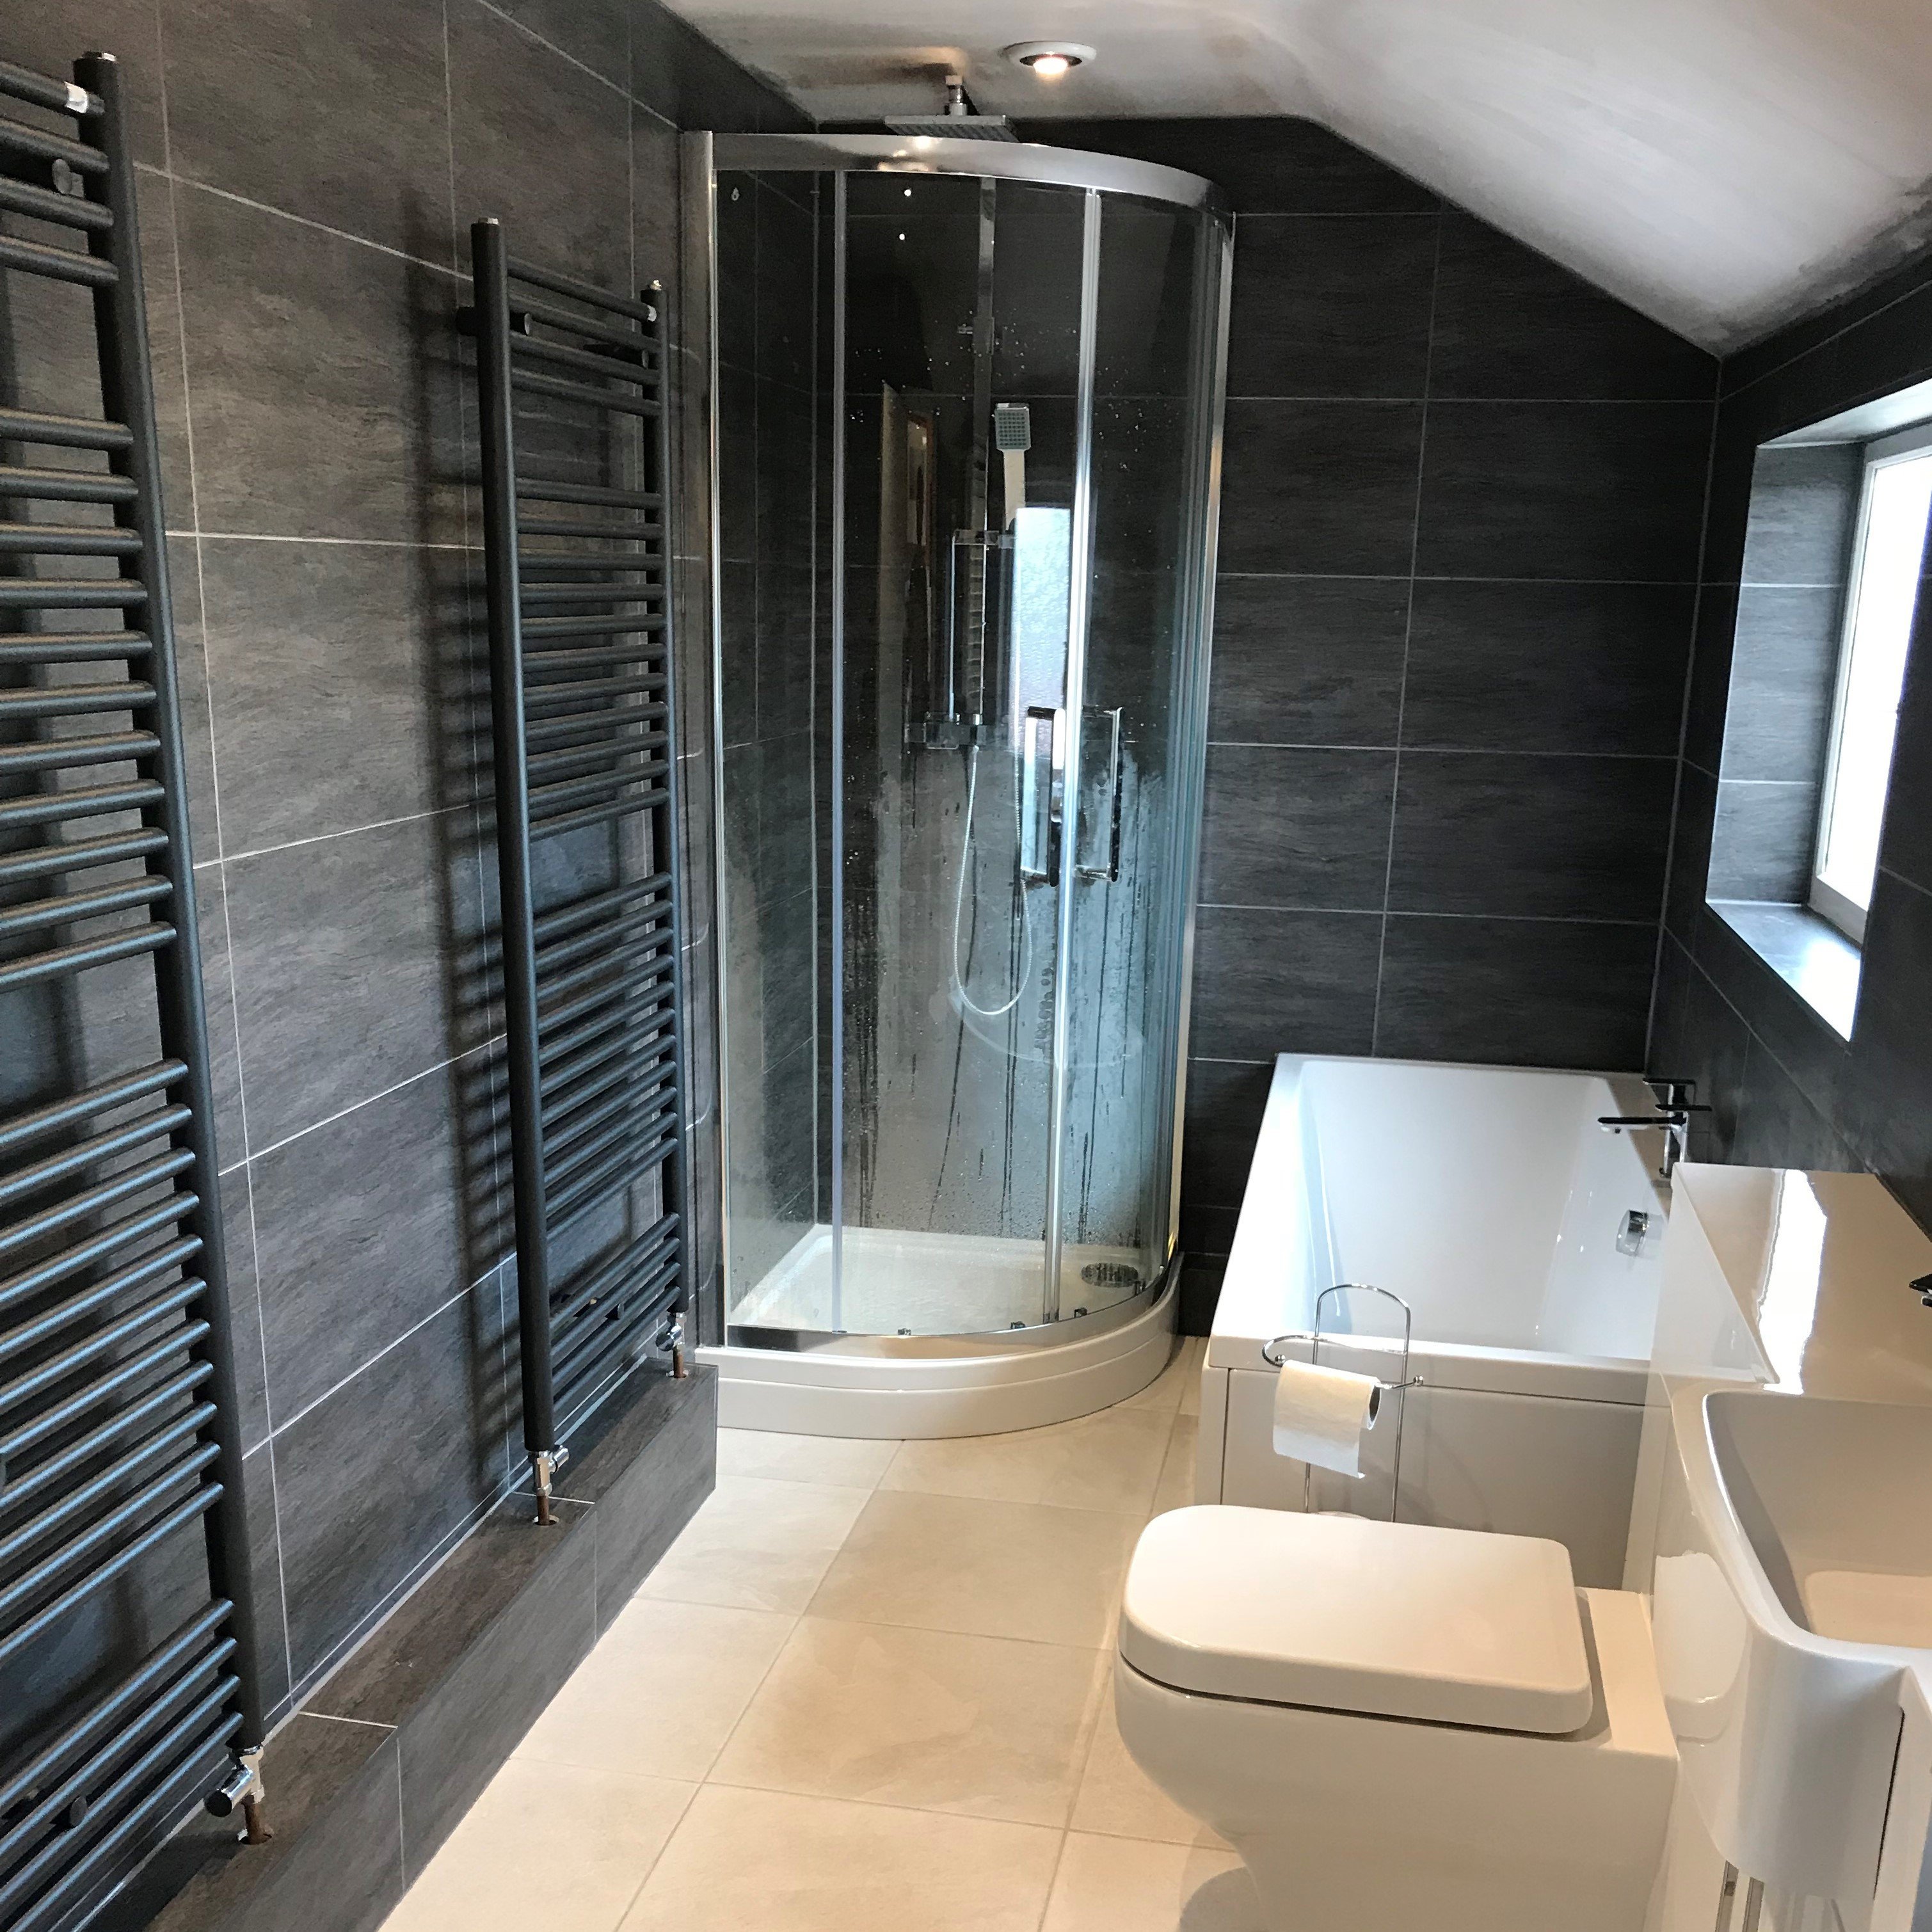 Bathroom transformation into contemporary design